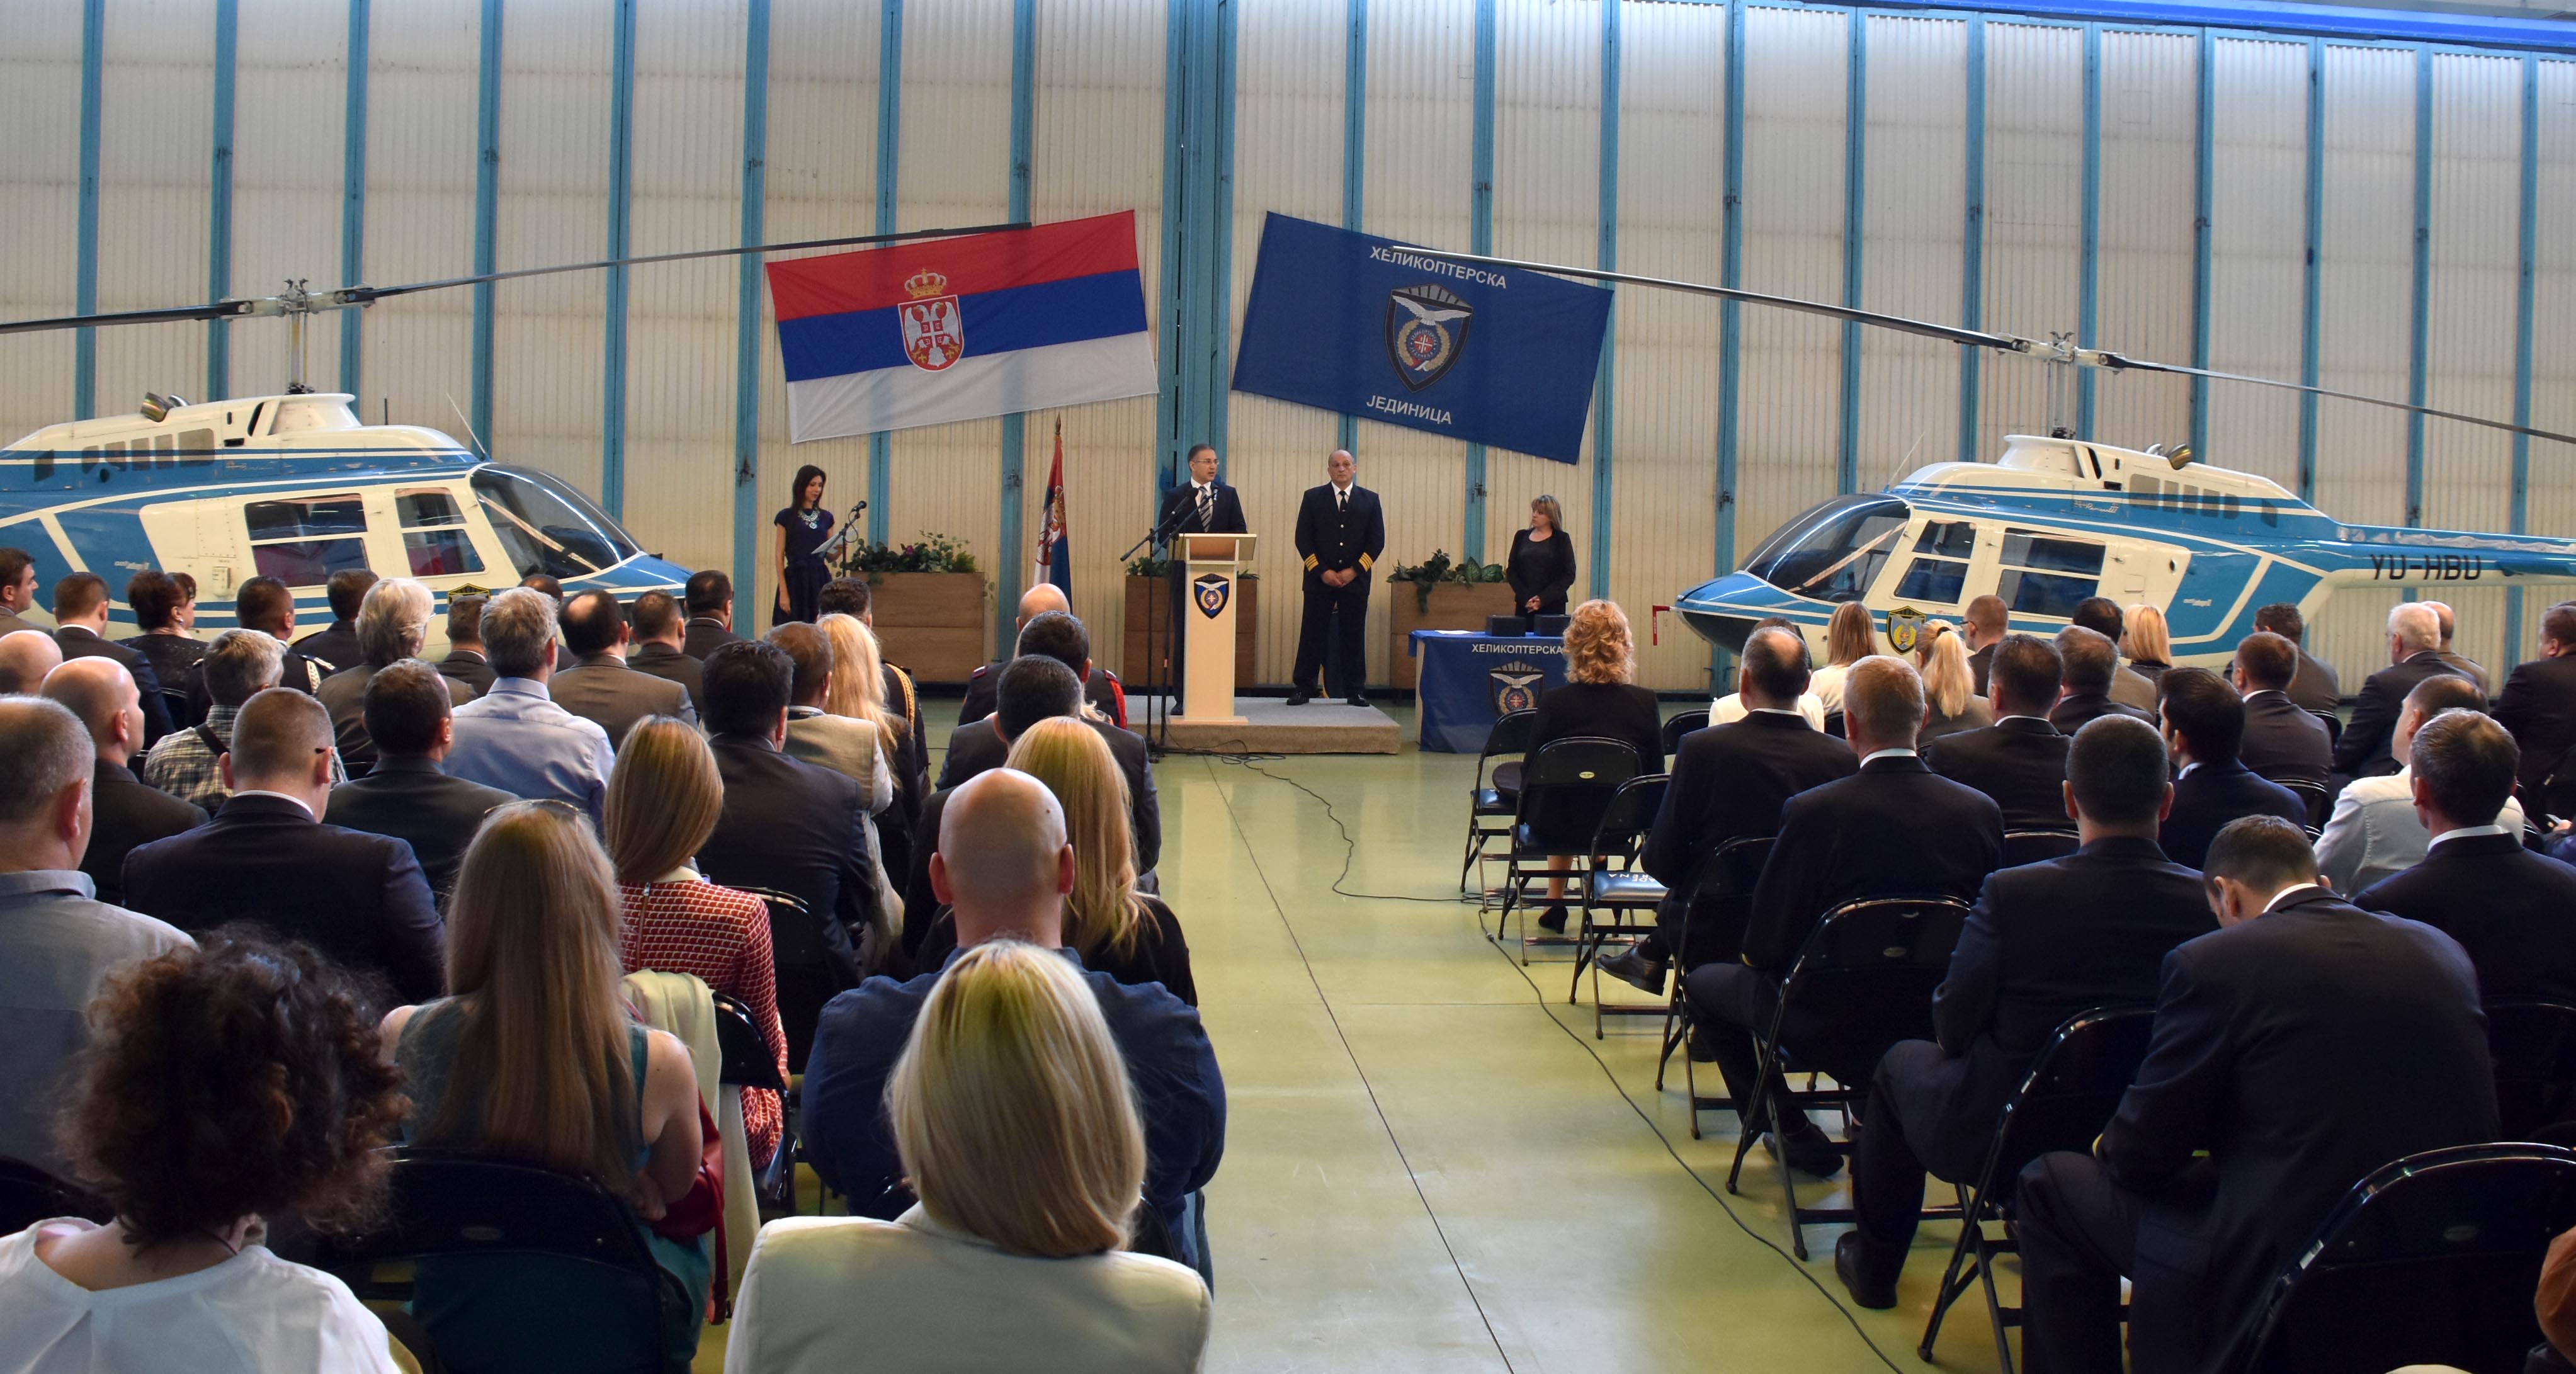 Стефановић: Хеликоптерска јединица MUP-a једна од најелитнијих јединица у Републици Србији и региону